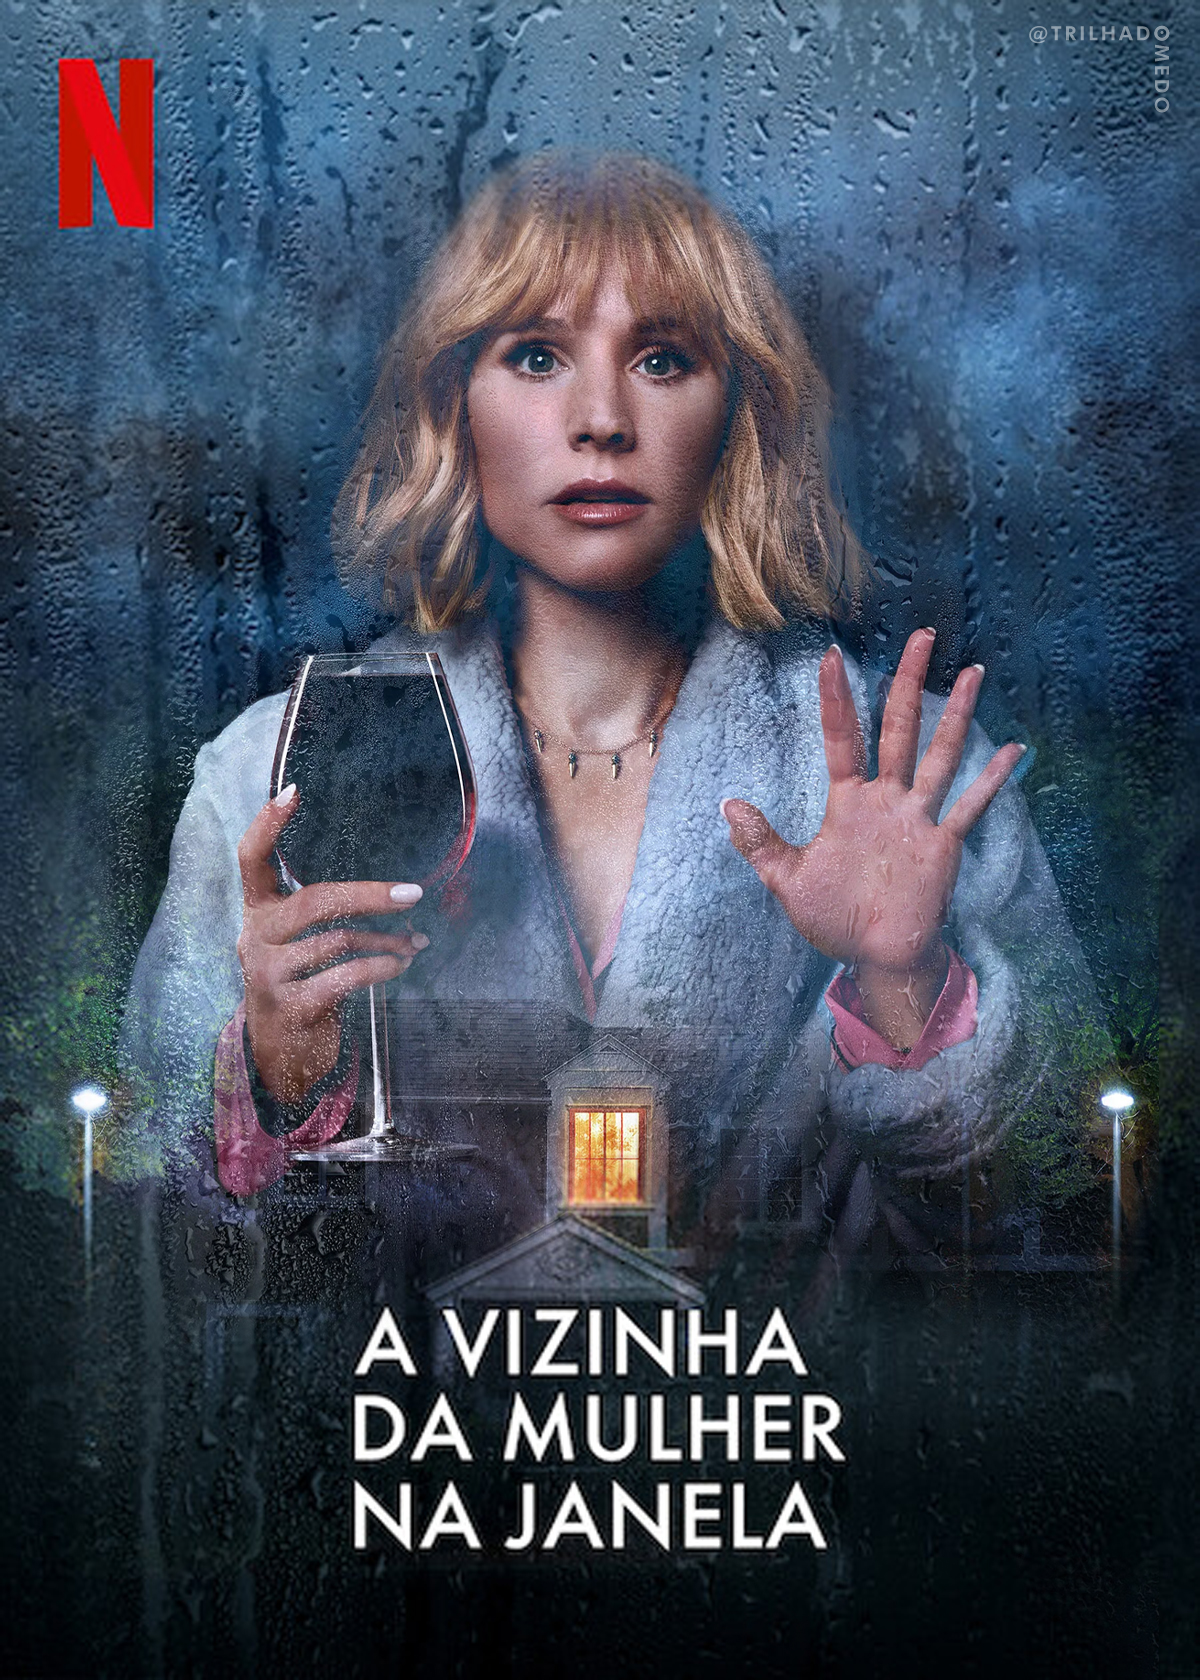 poster A Vizinha da Mulher na Janela | Netflix divulga novo trailer da série de suspense e comédia com Kristen Bell